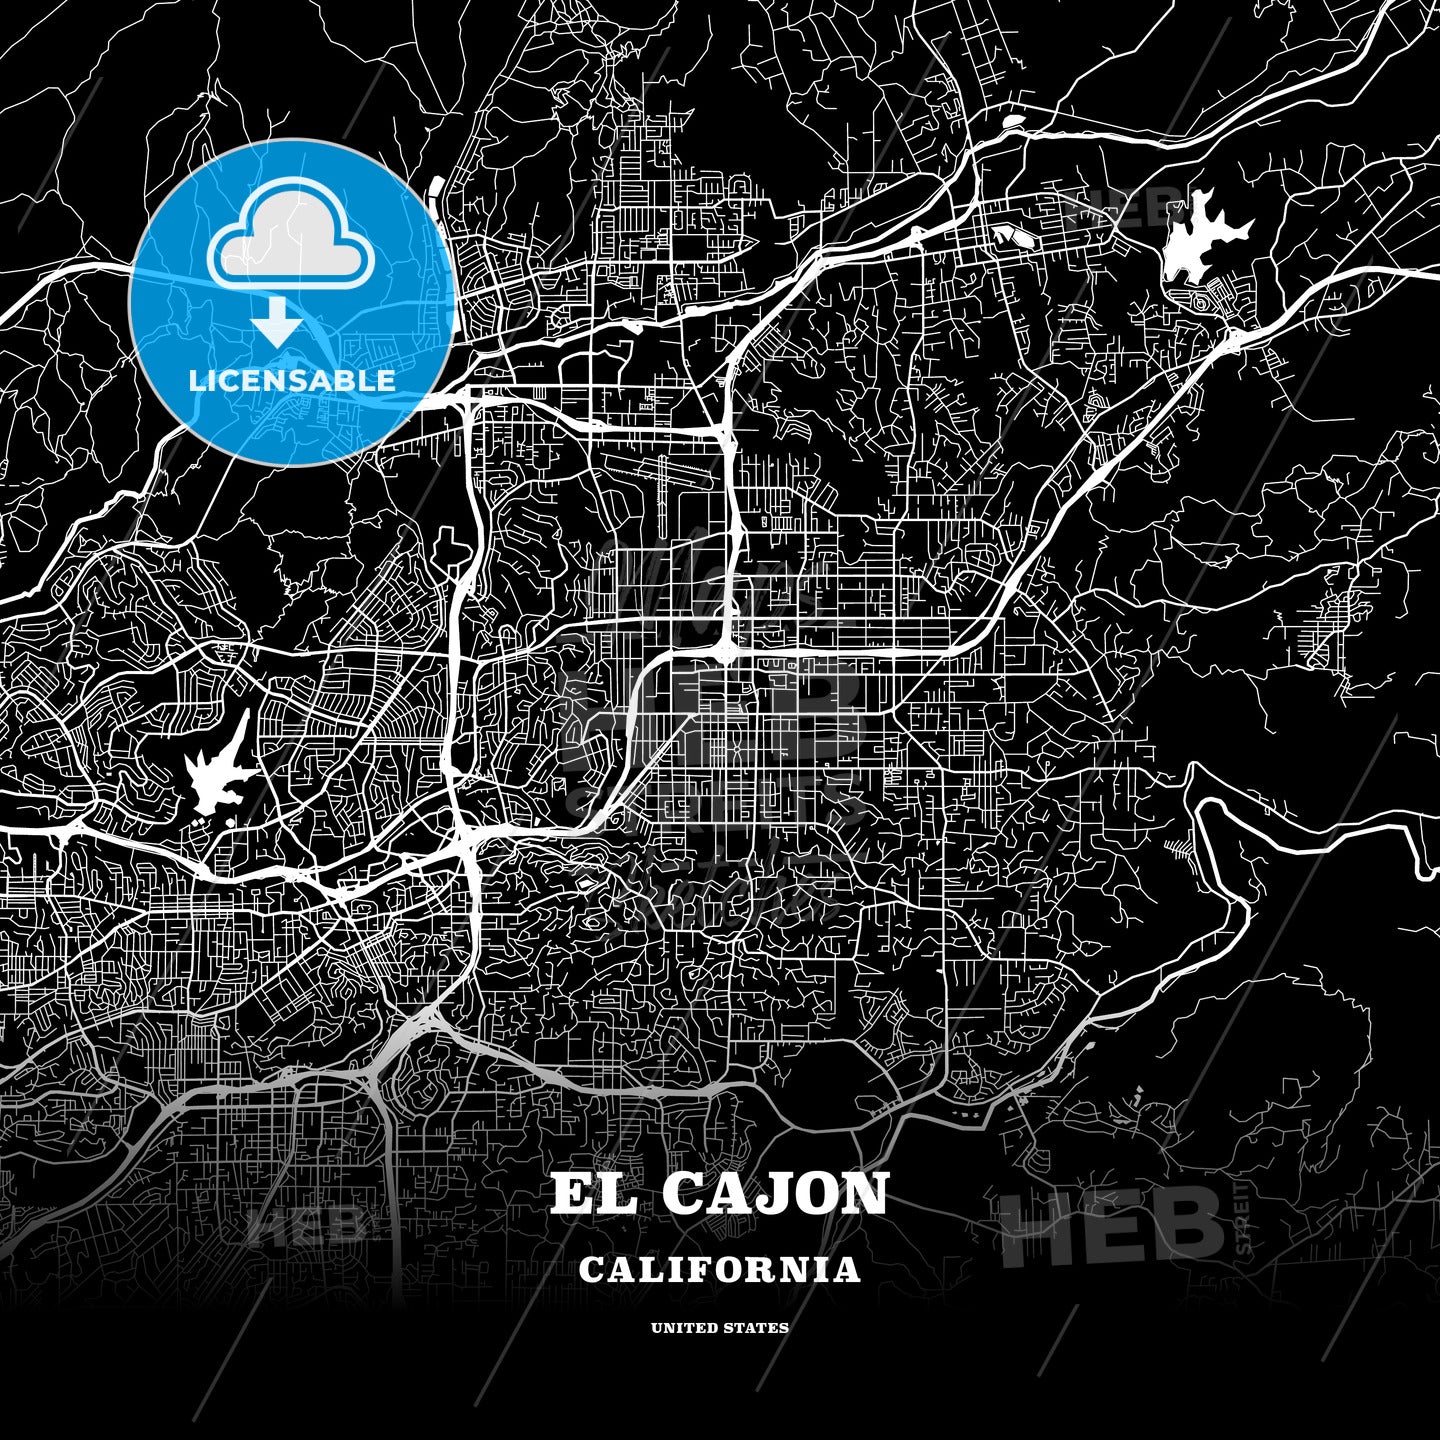 El Cajon, California, USA map